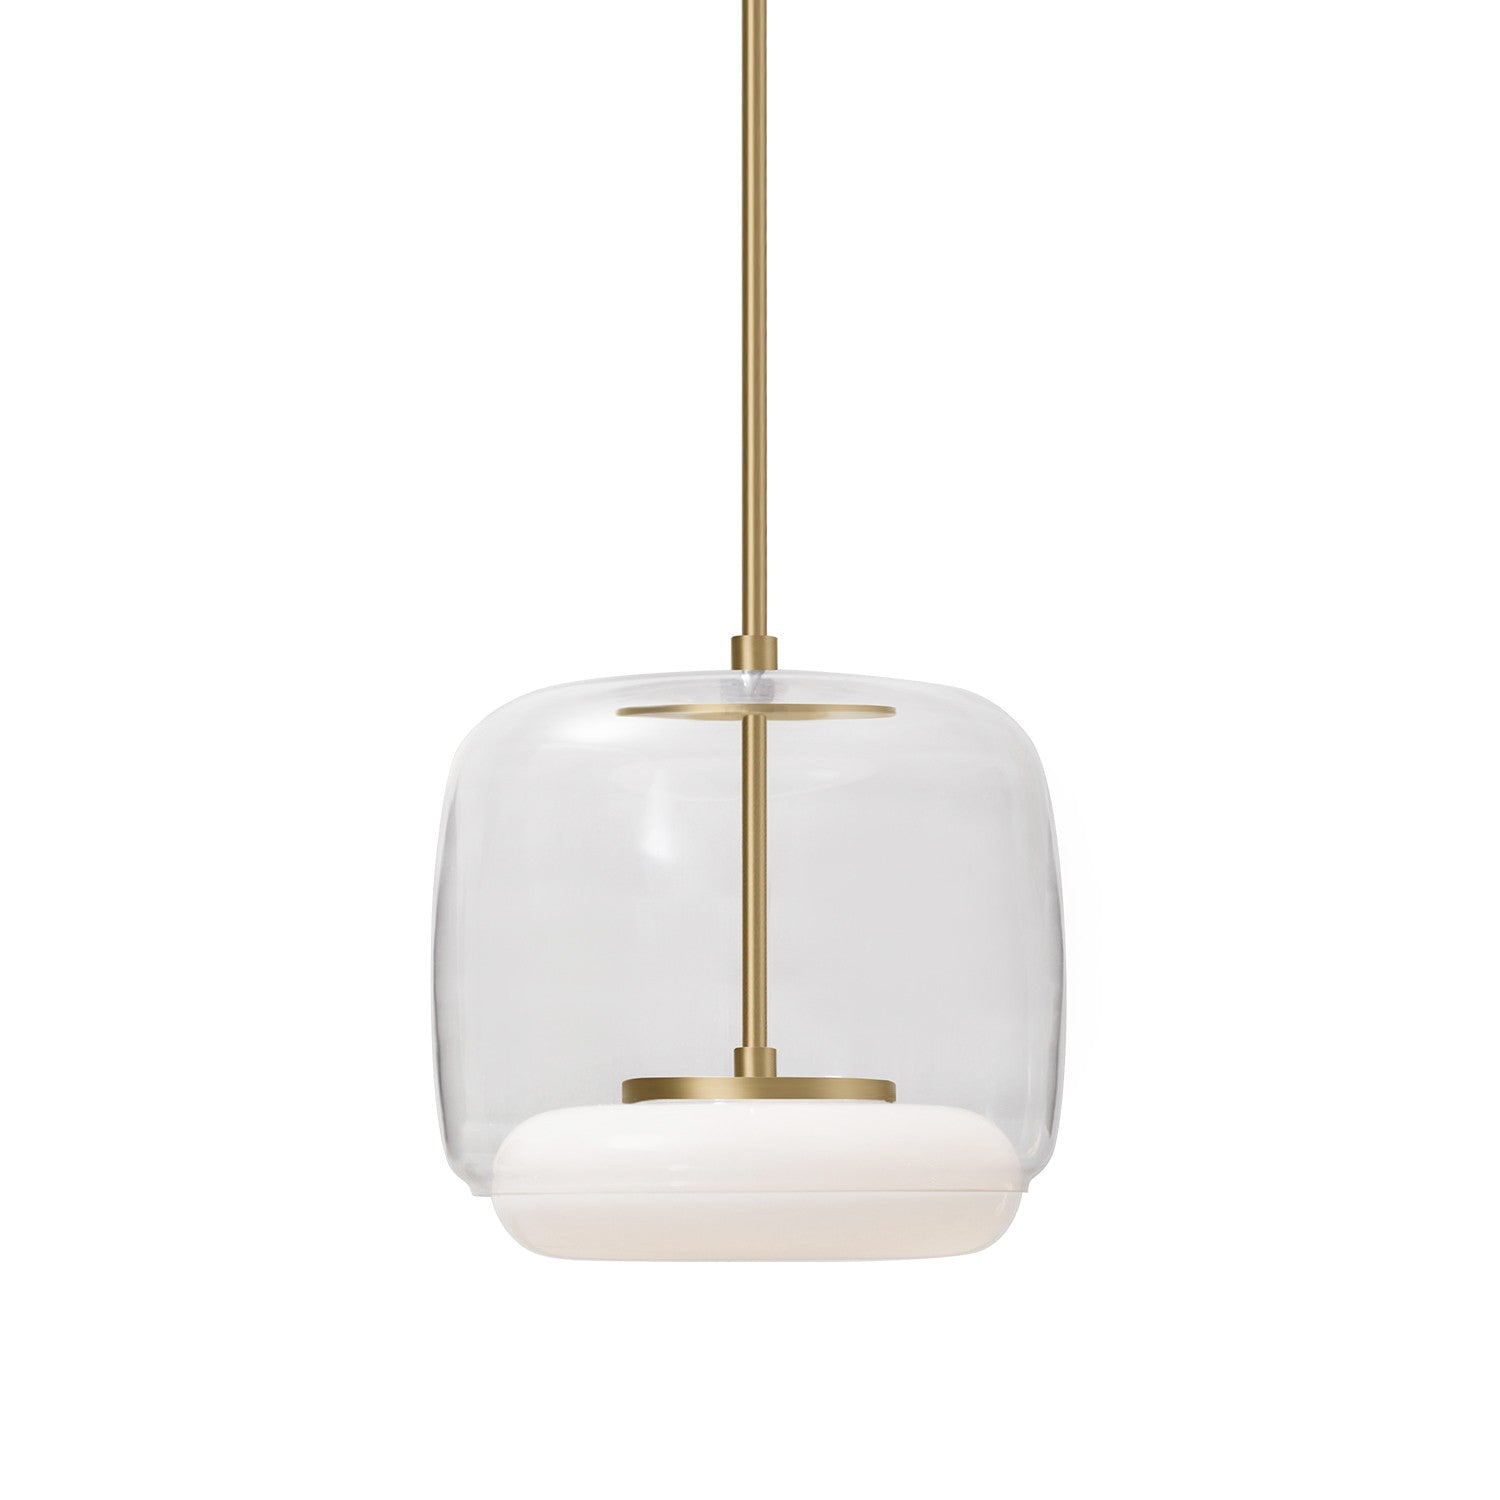 Kuzco Canada - LED Pendant - Enkel - Clear/Brushed Gold- Union Lighting Luminaires Decor